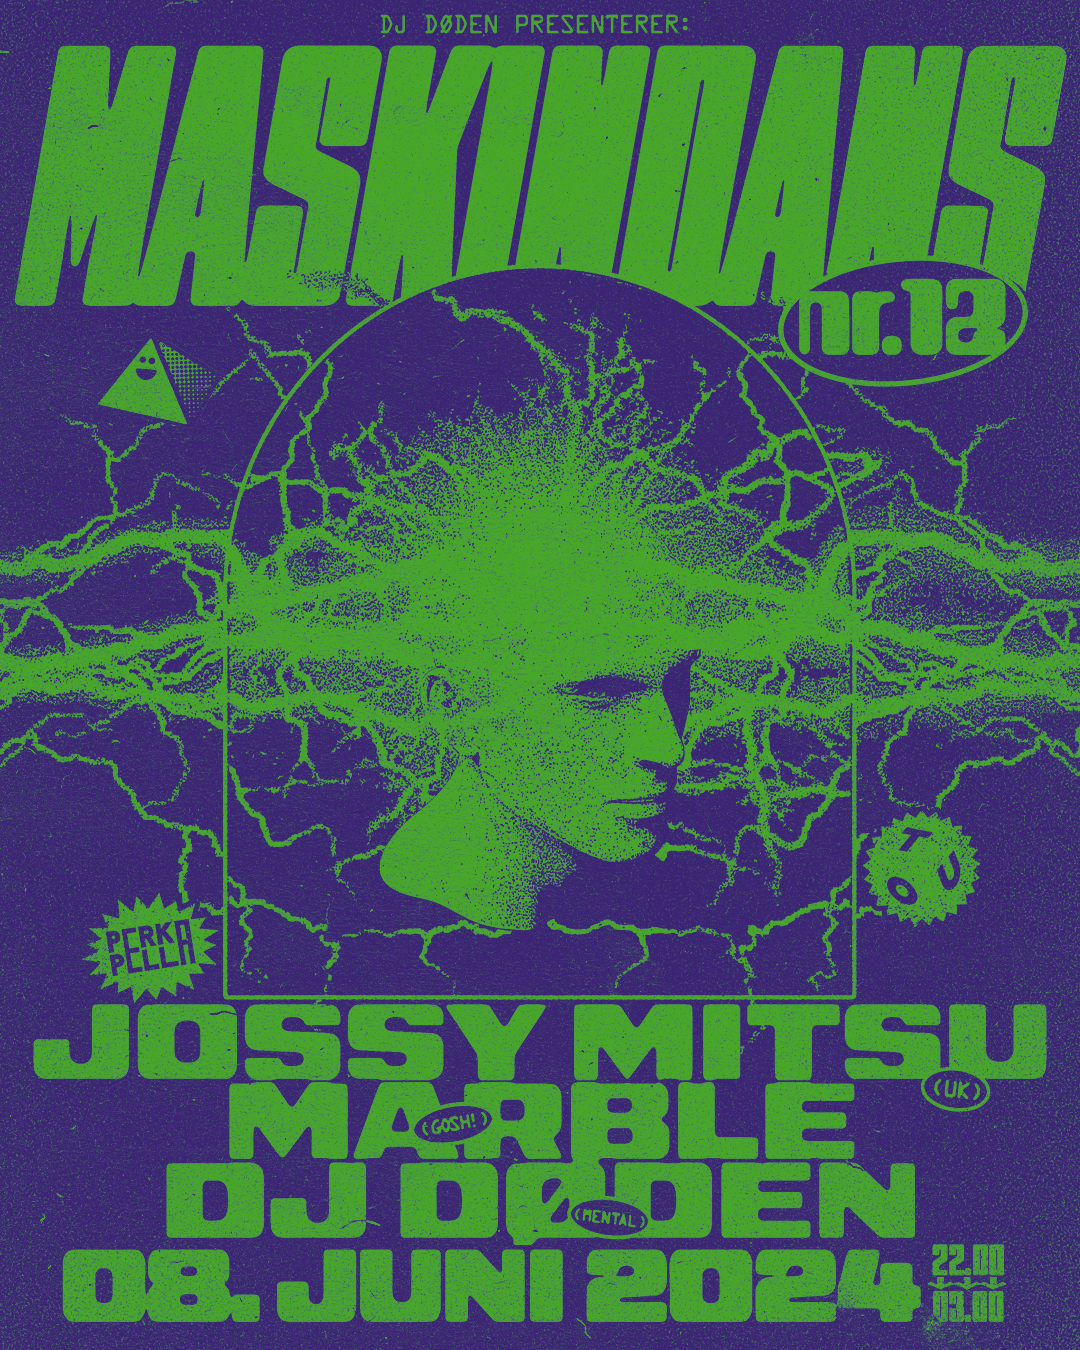 MASKINDANS #12 w Jossy Mitsu (UK), Marble & dj døden - フライヤー表